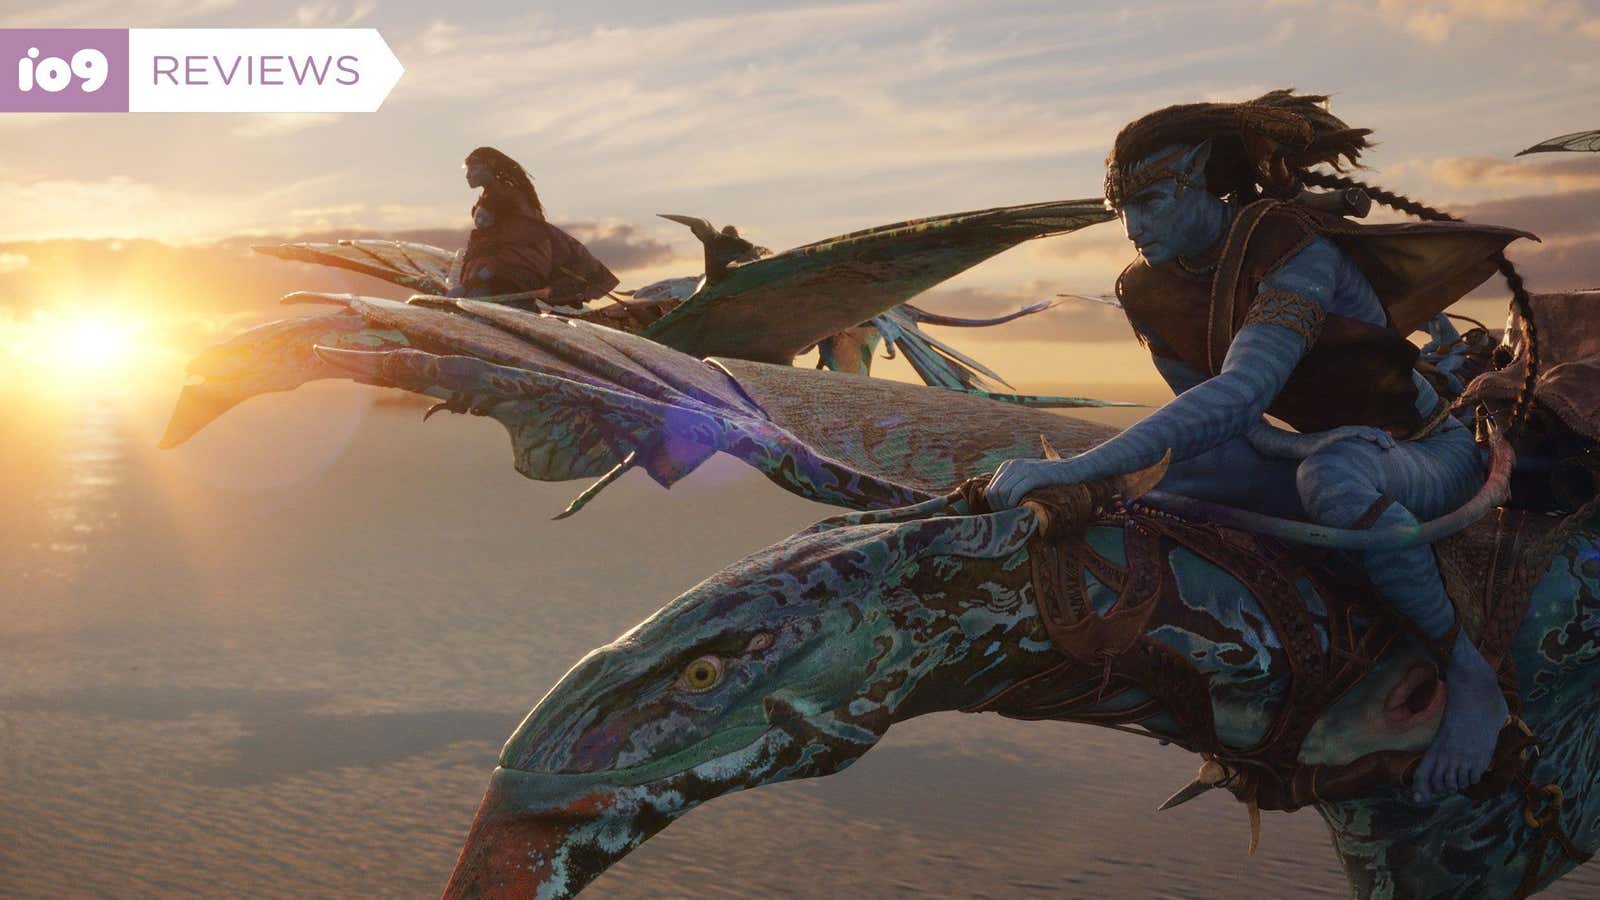 Jake and Neytiri take flight in Avatar: The Way of Water